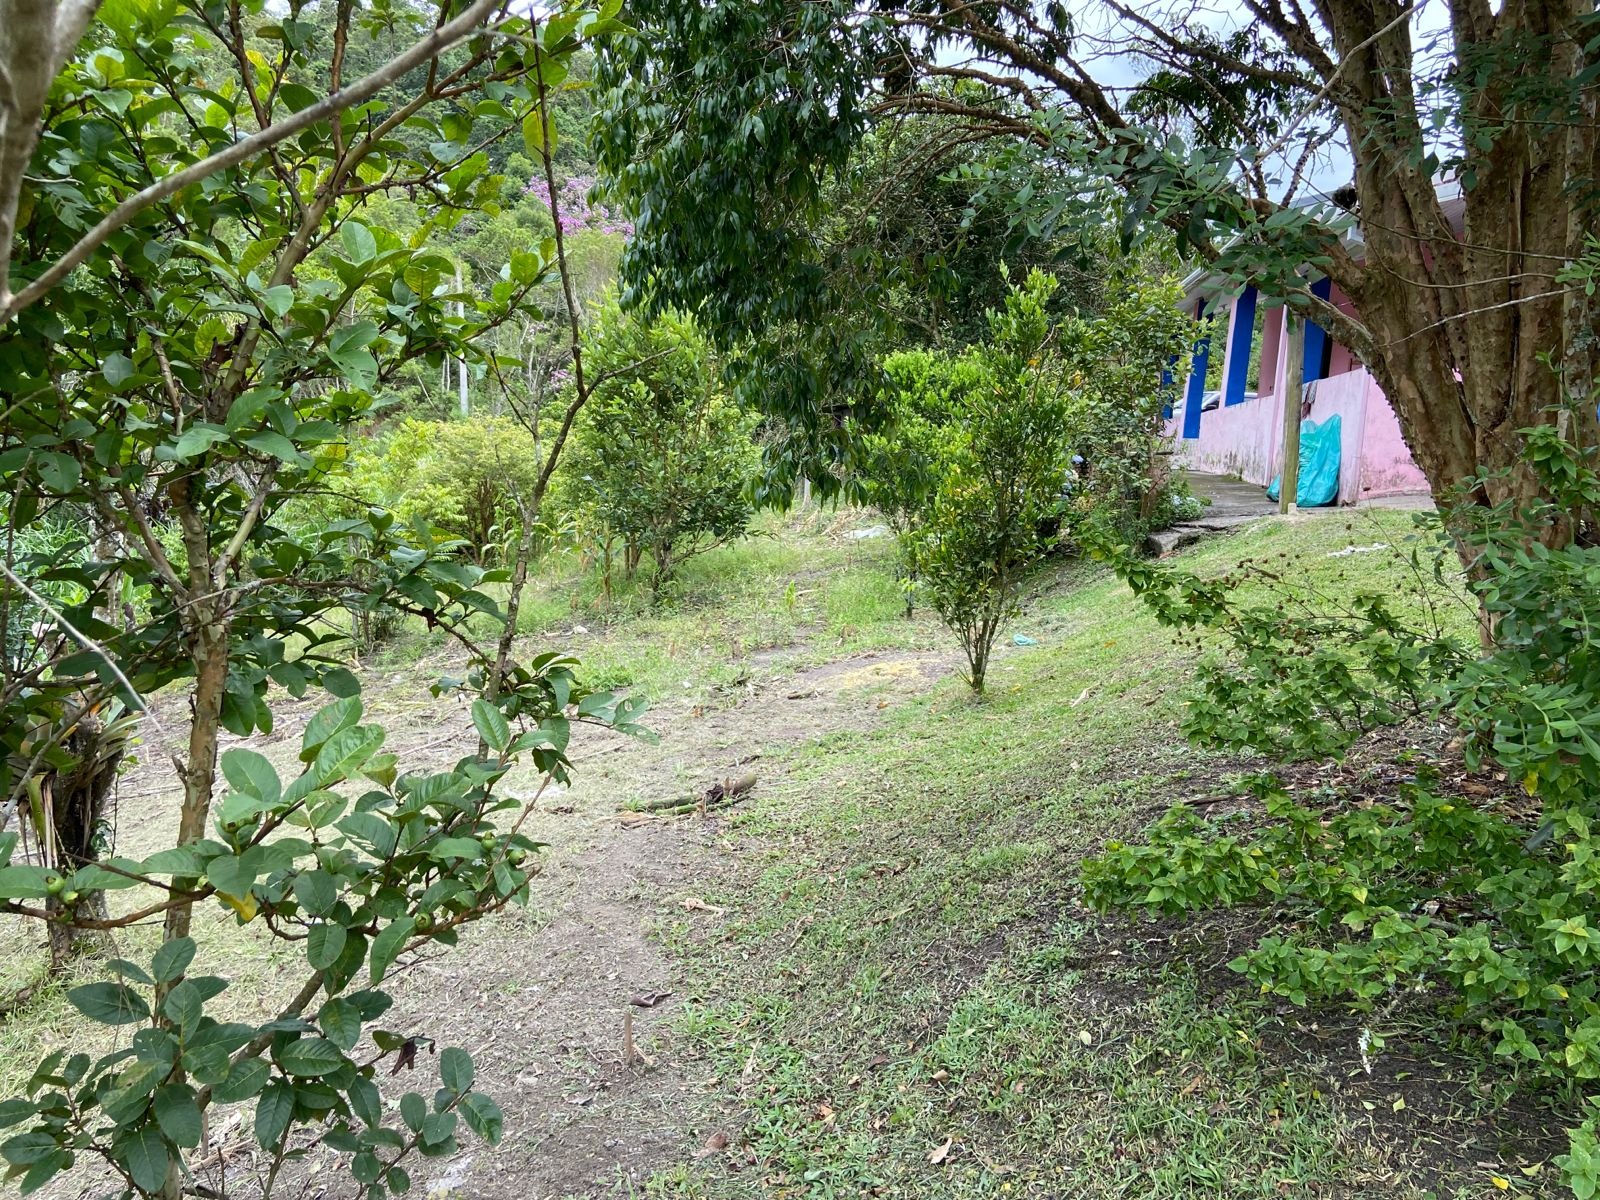 Sítio de 39 ha em São Luiz do Paraitinga, SP